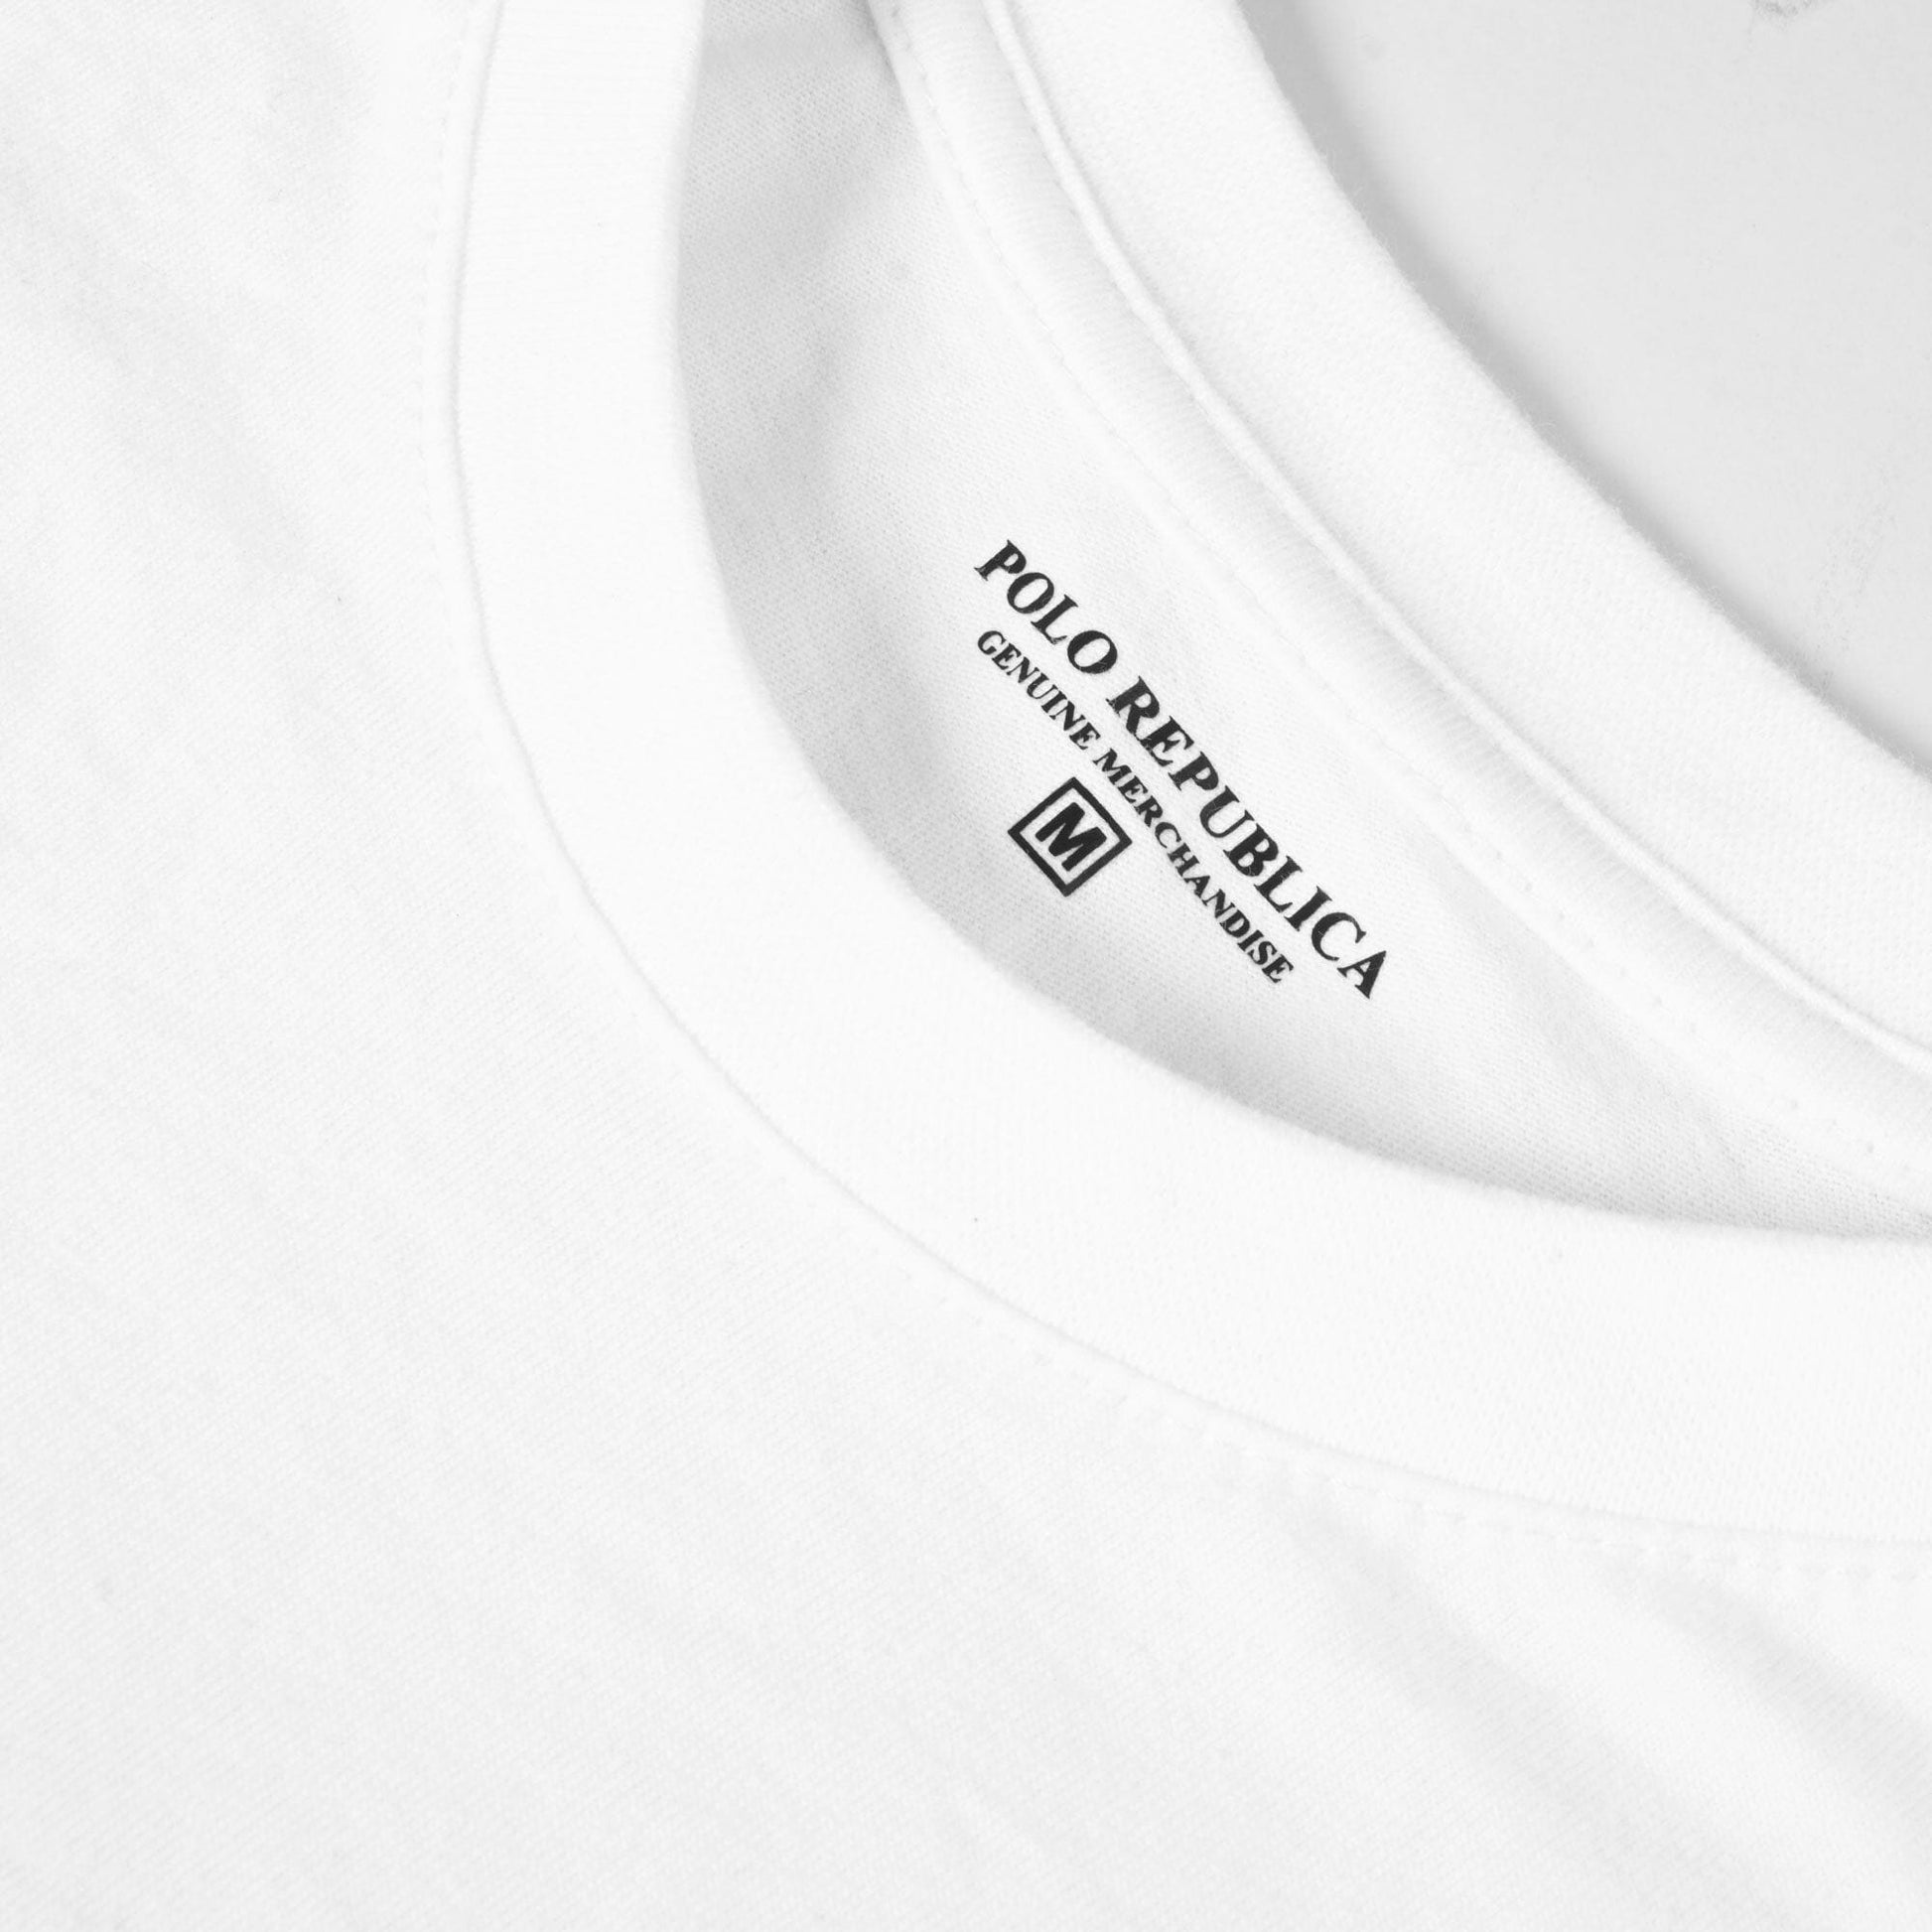 Polo Republica Men's Take Risk Printed Crew Neck Tee Shirt Men's Tee Shirt Polo Republica 